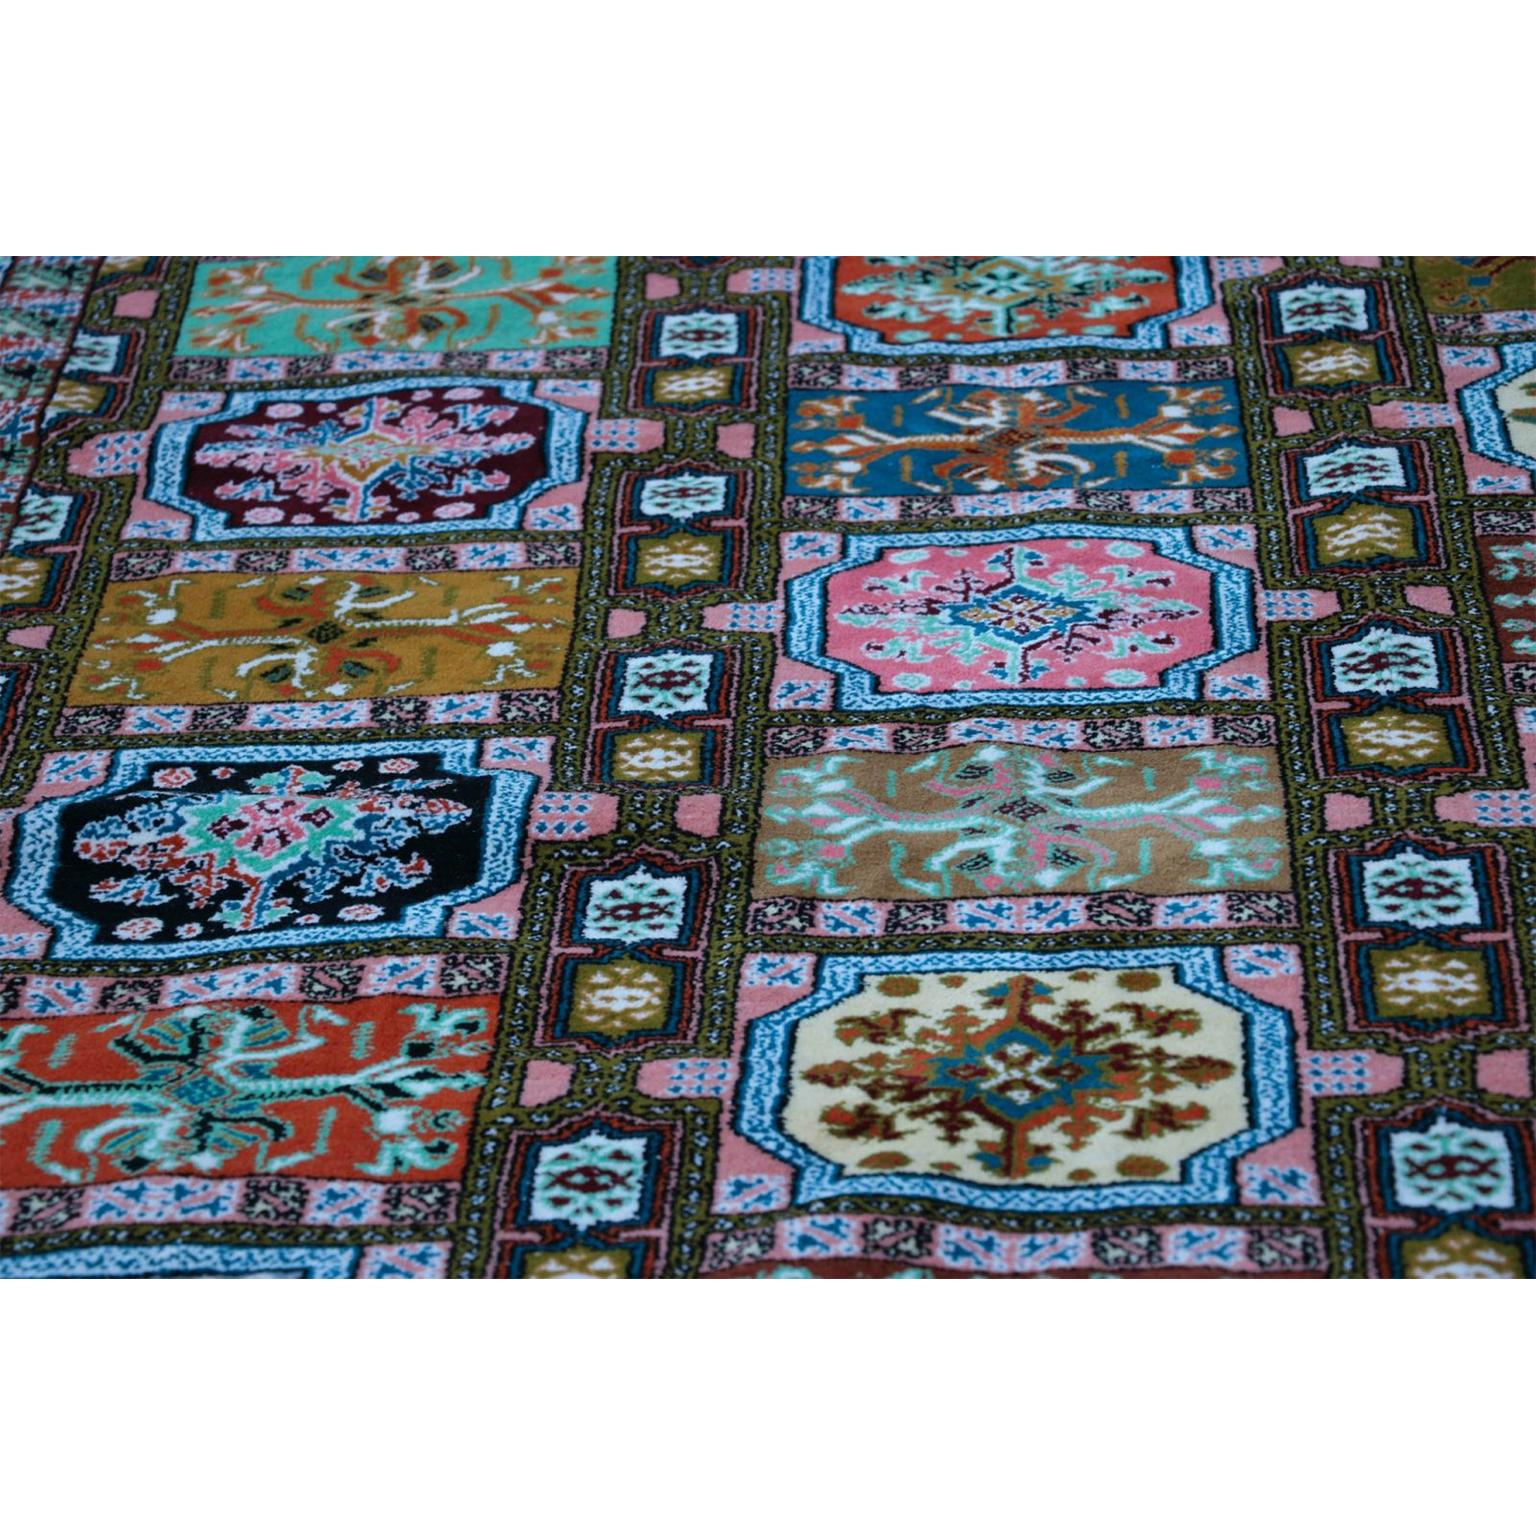 Un magnifique tapis africain de la région du Maroc ou de la Tunisie. C'est une canopée intéressante et très complexe de couleurs pour votre sol, l'hôte de fibres durables tissées à poils entiers, des représentations géométriques de motifs complexes